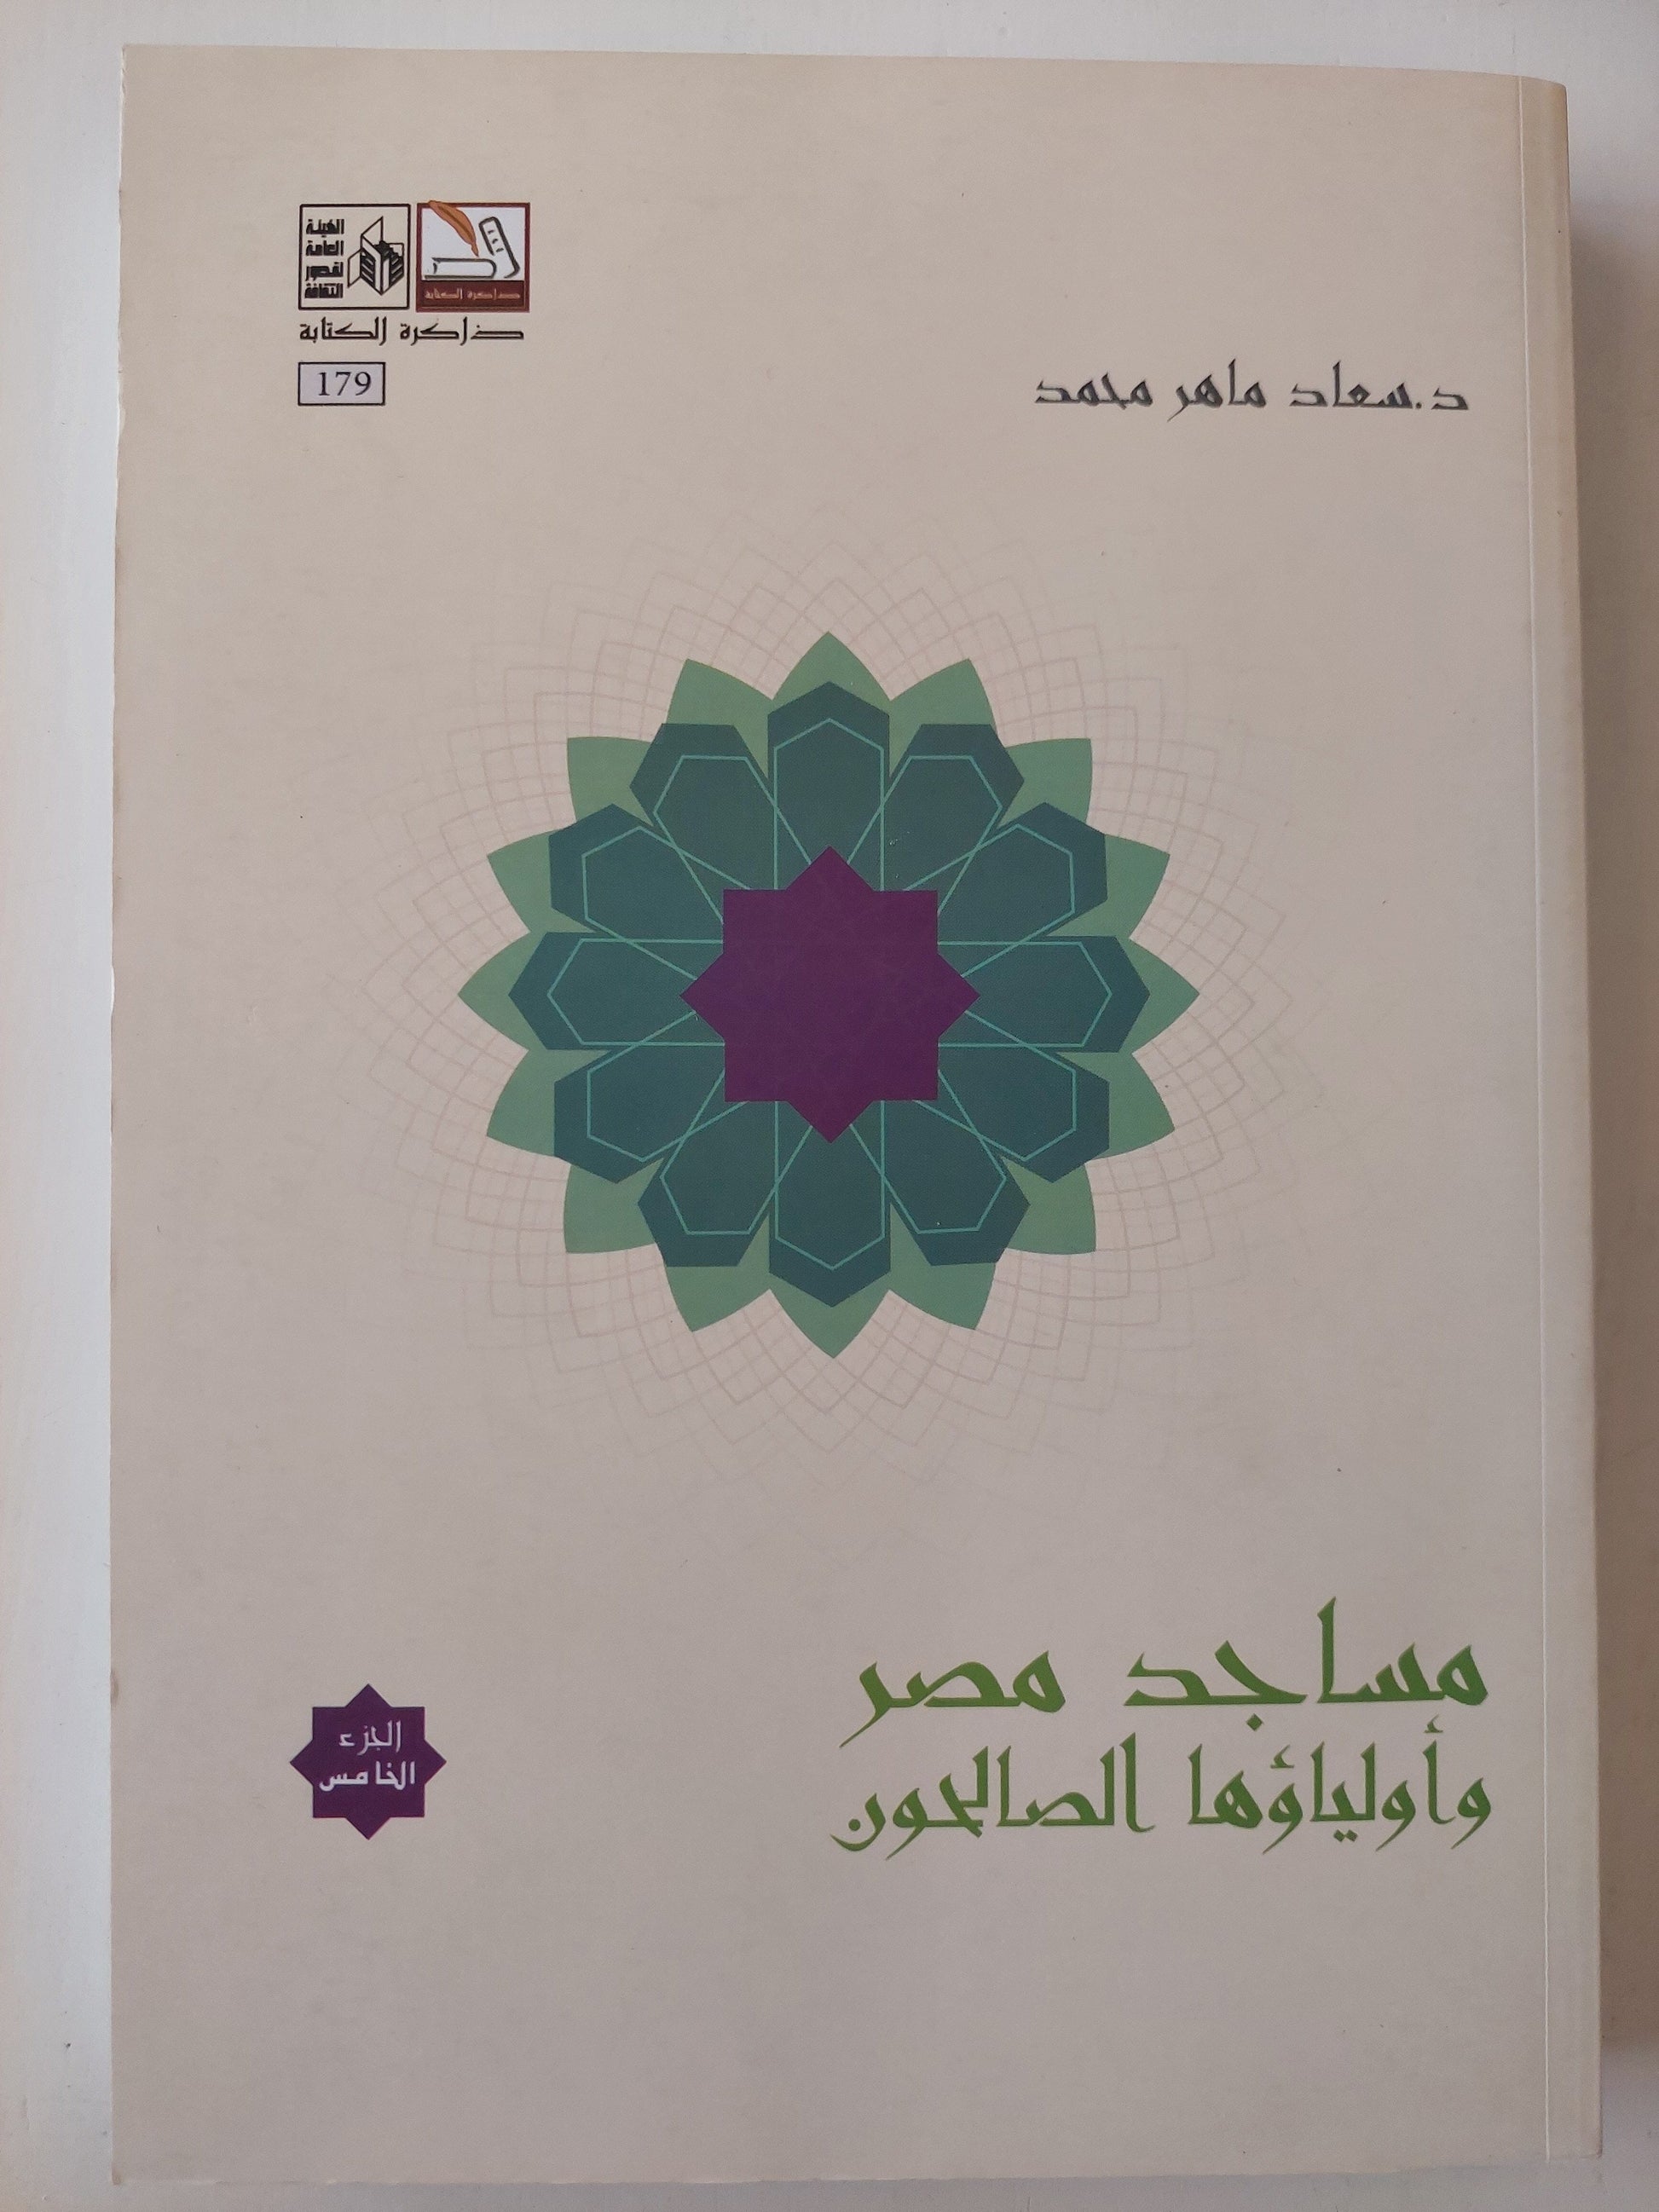 مساجد مصر وأولياؤها الصالحون - 5 أجزاء كتاب المكتبة الفلسفية 